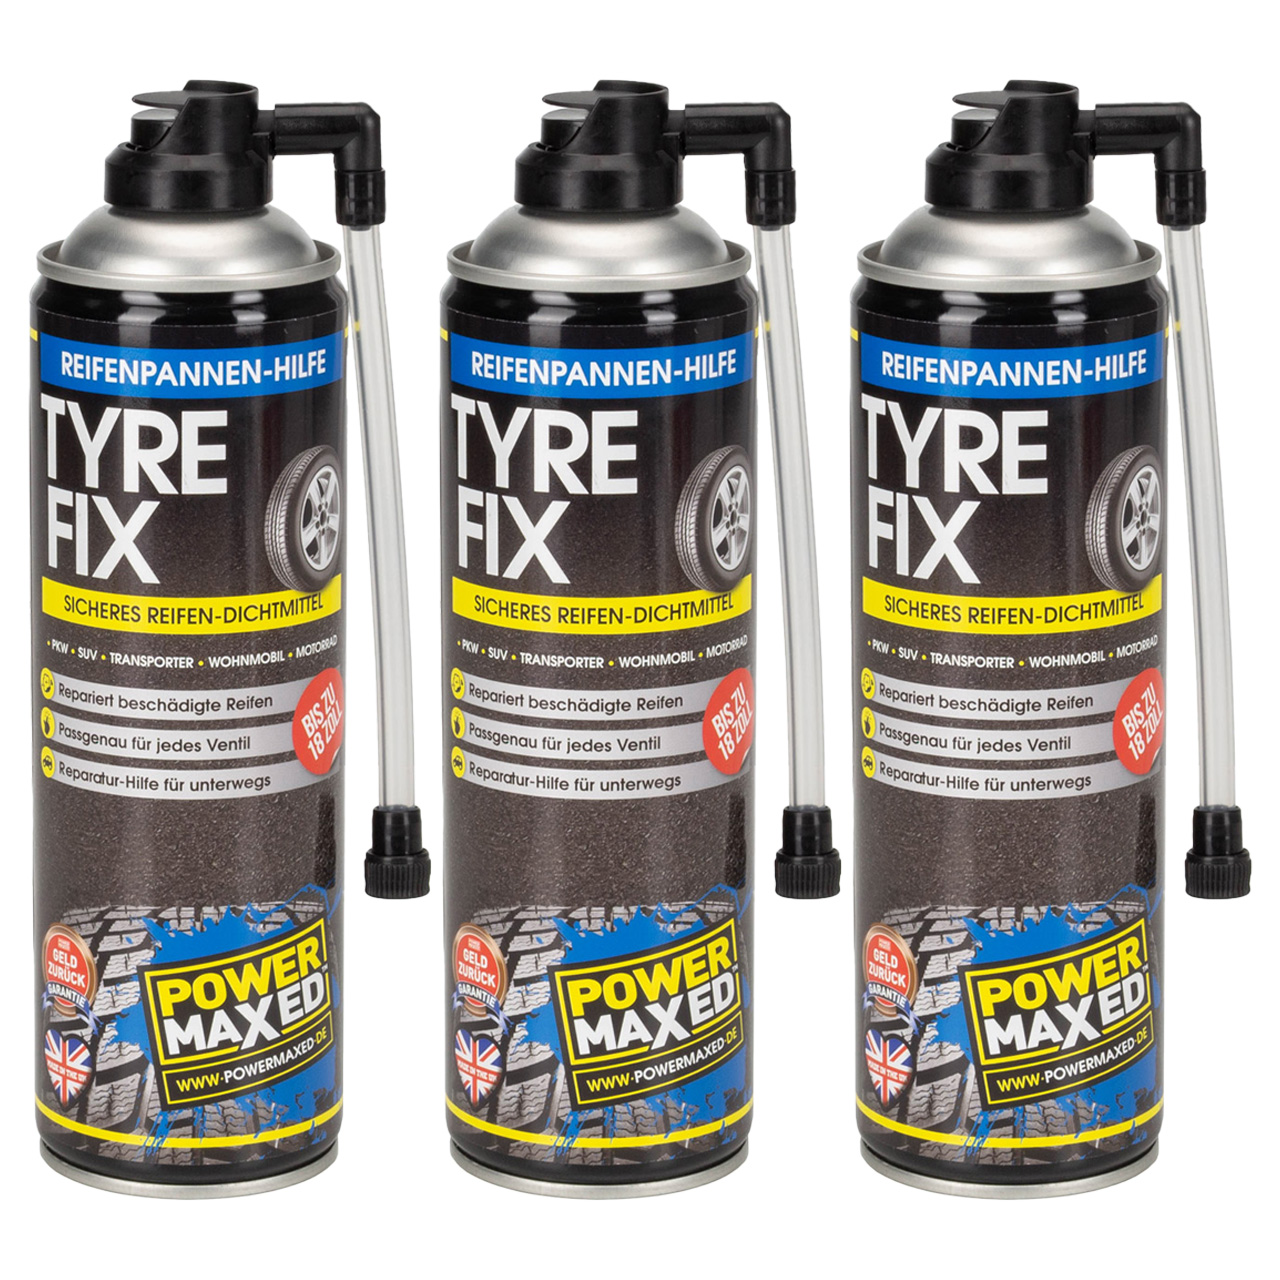 POWERMAXED TYRE-FIX 500ml - Schnelle Reifenpannen-Hilfe bis 18